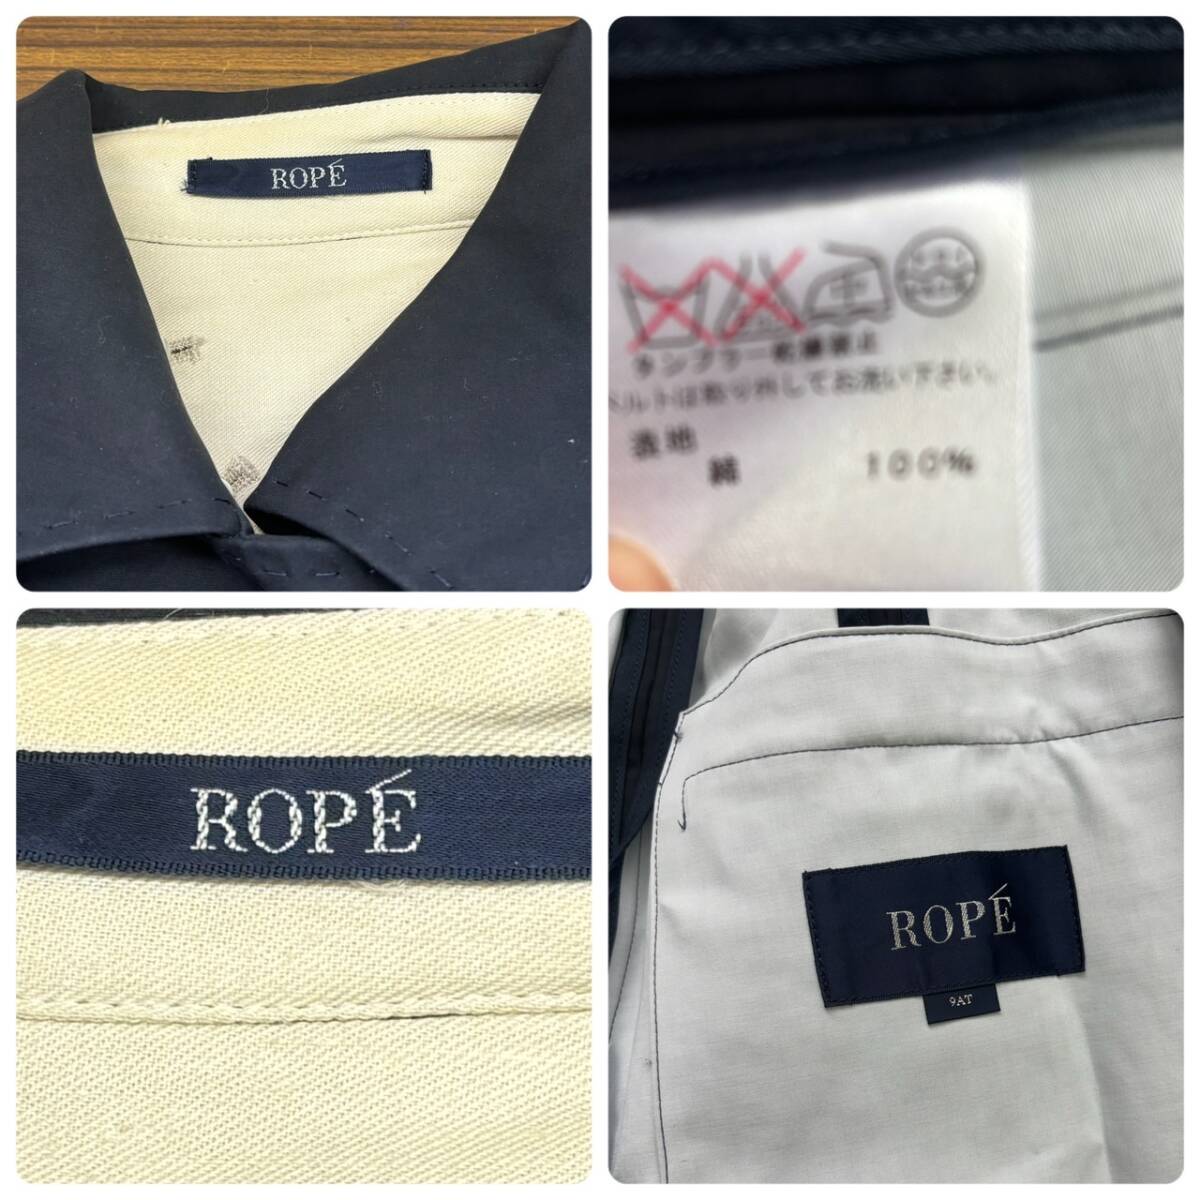 ROPE ◆ スプリング ハーフコート ジャケット 9AT サイズ 紺 ◆ ロぺ ◆ レディース アウター_画像7